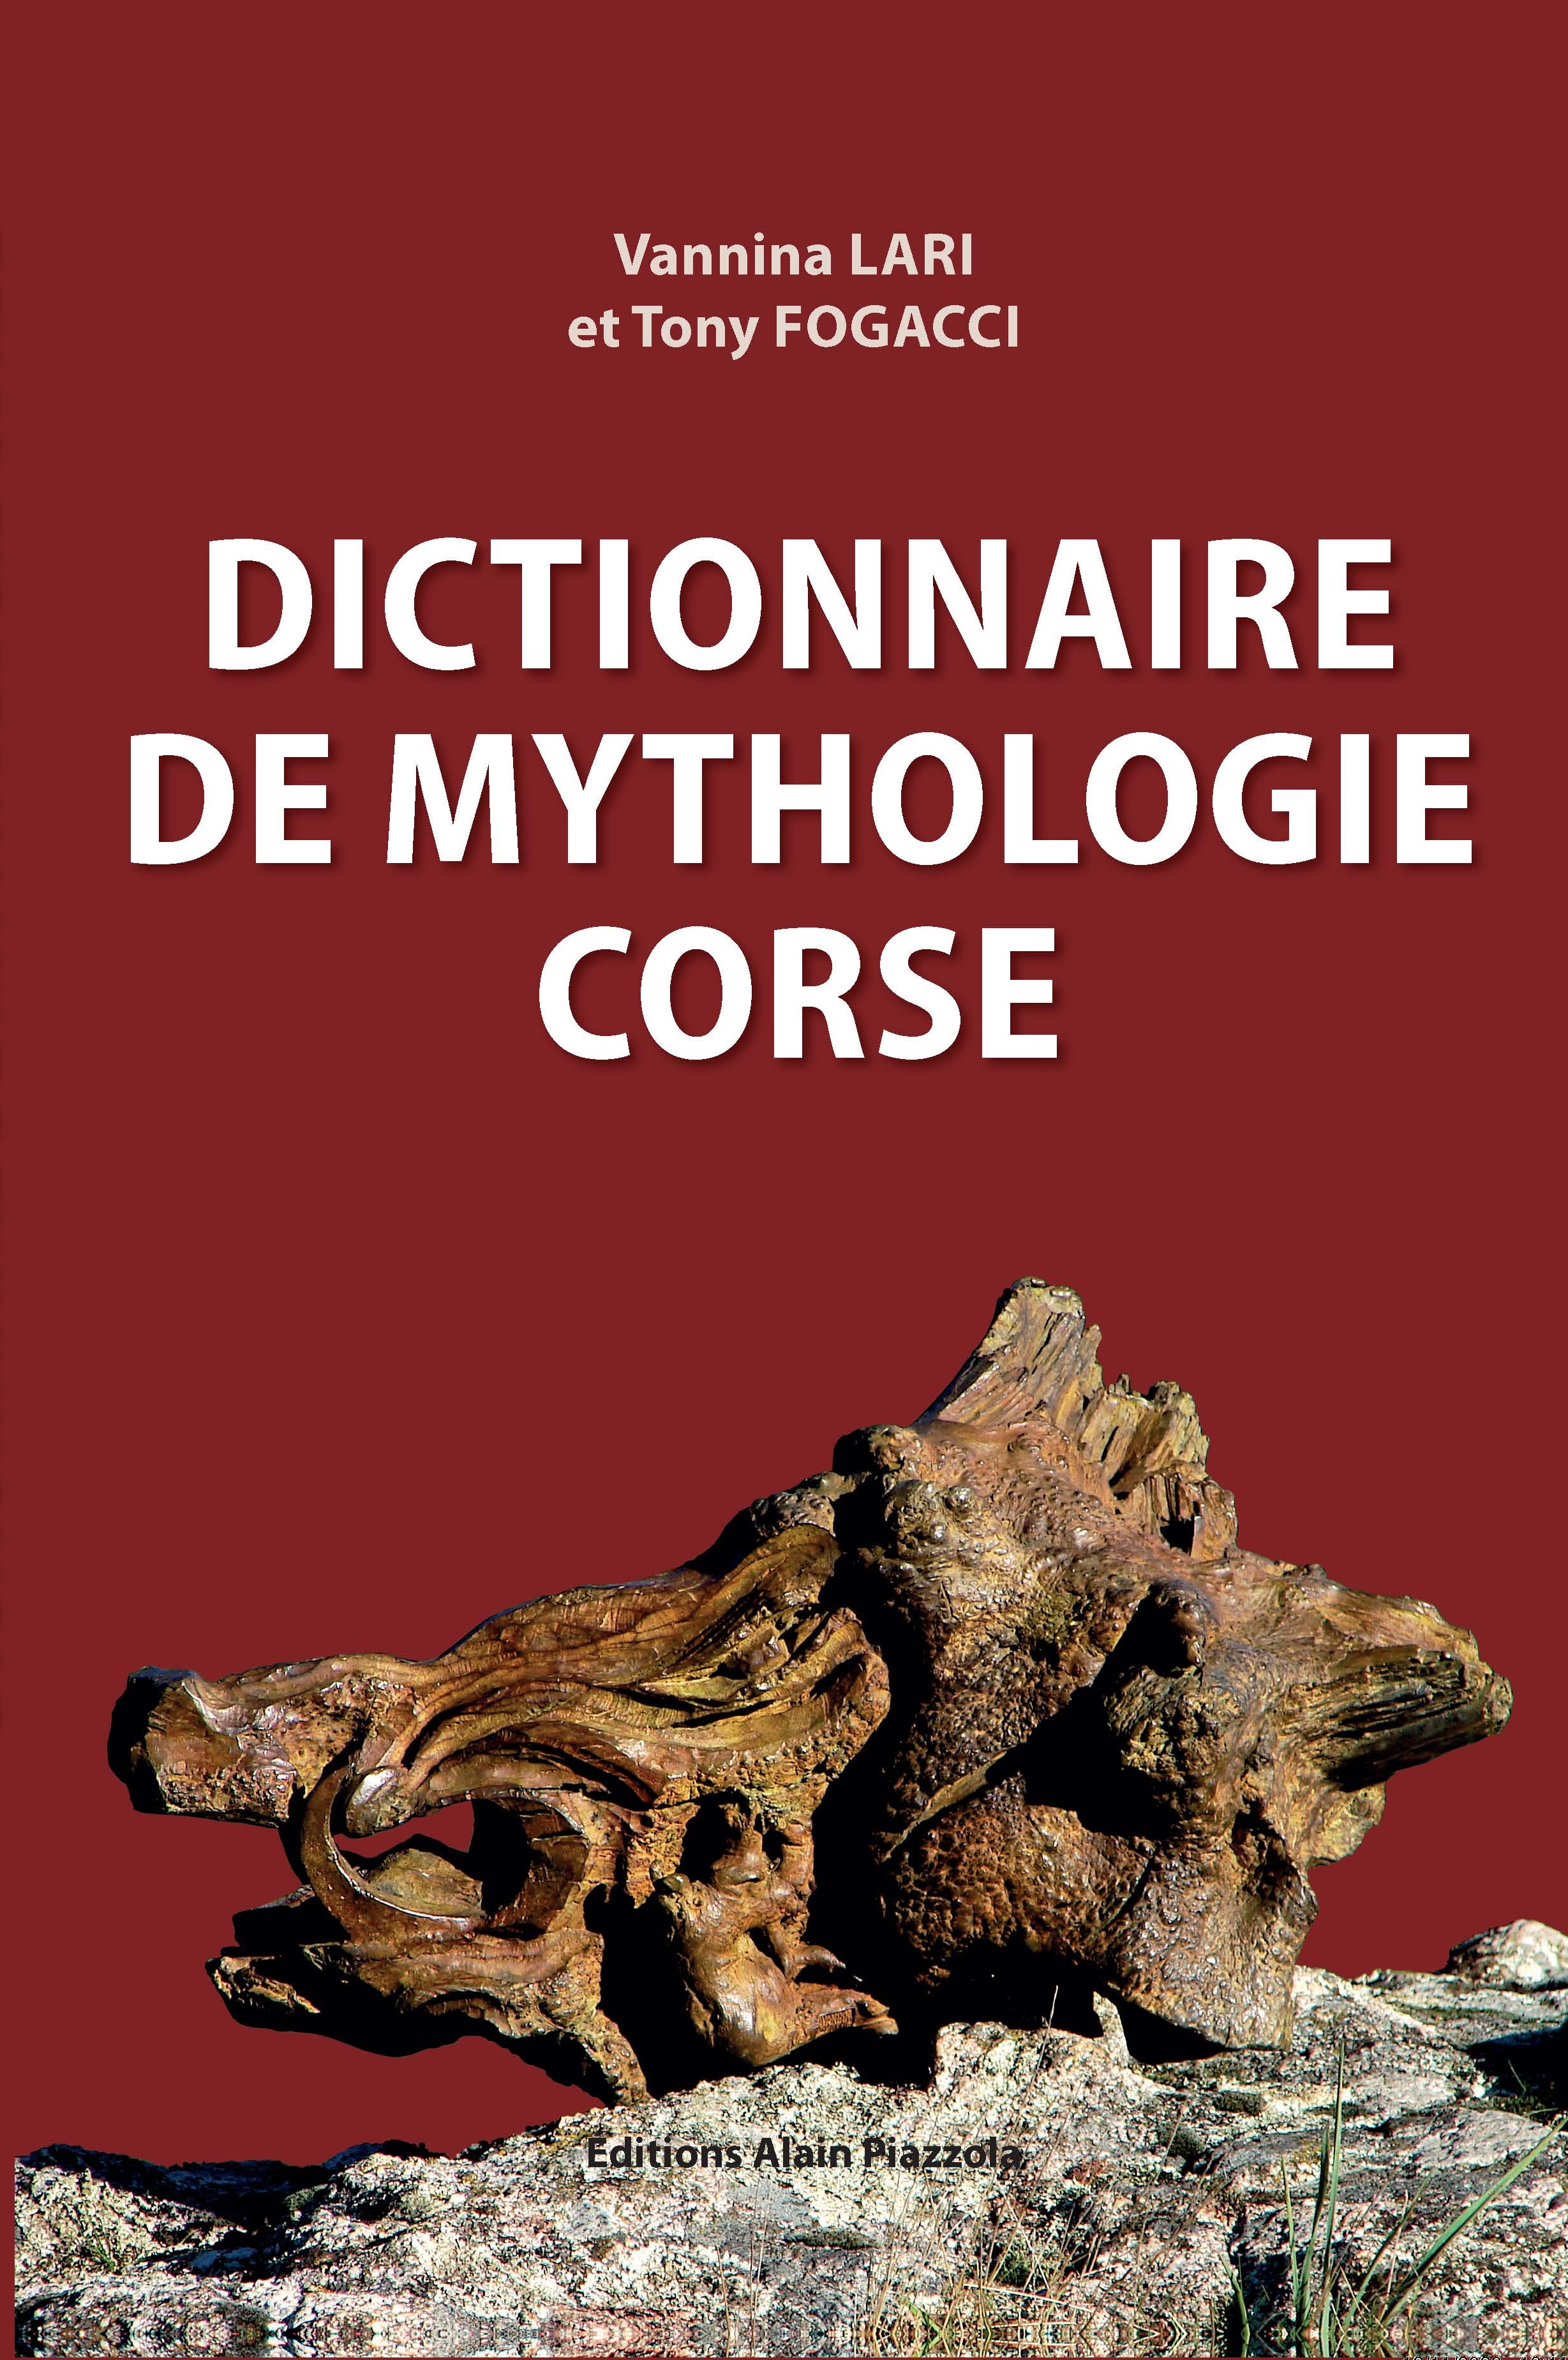 >Dictionnaire de mythologie corse